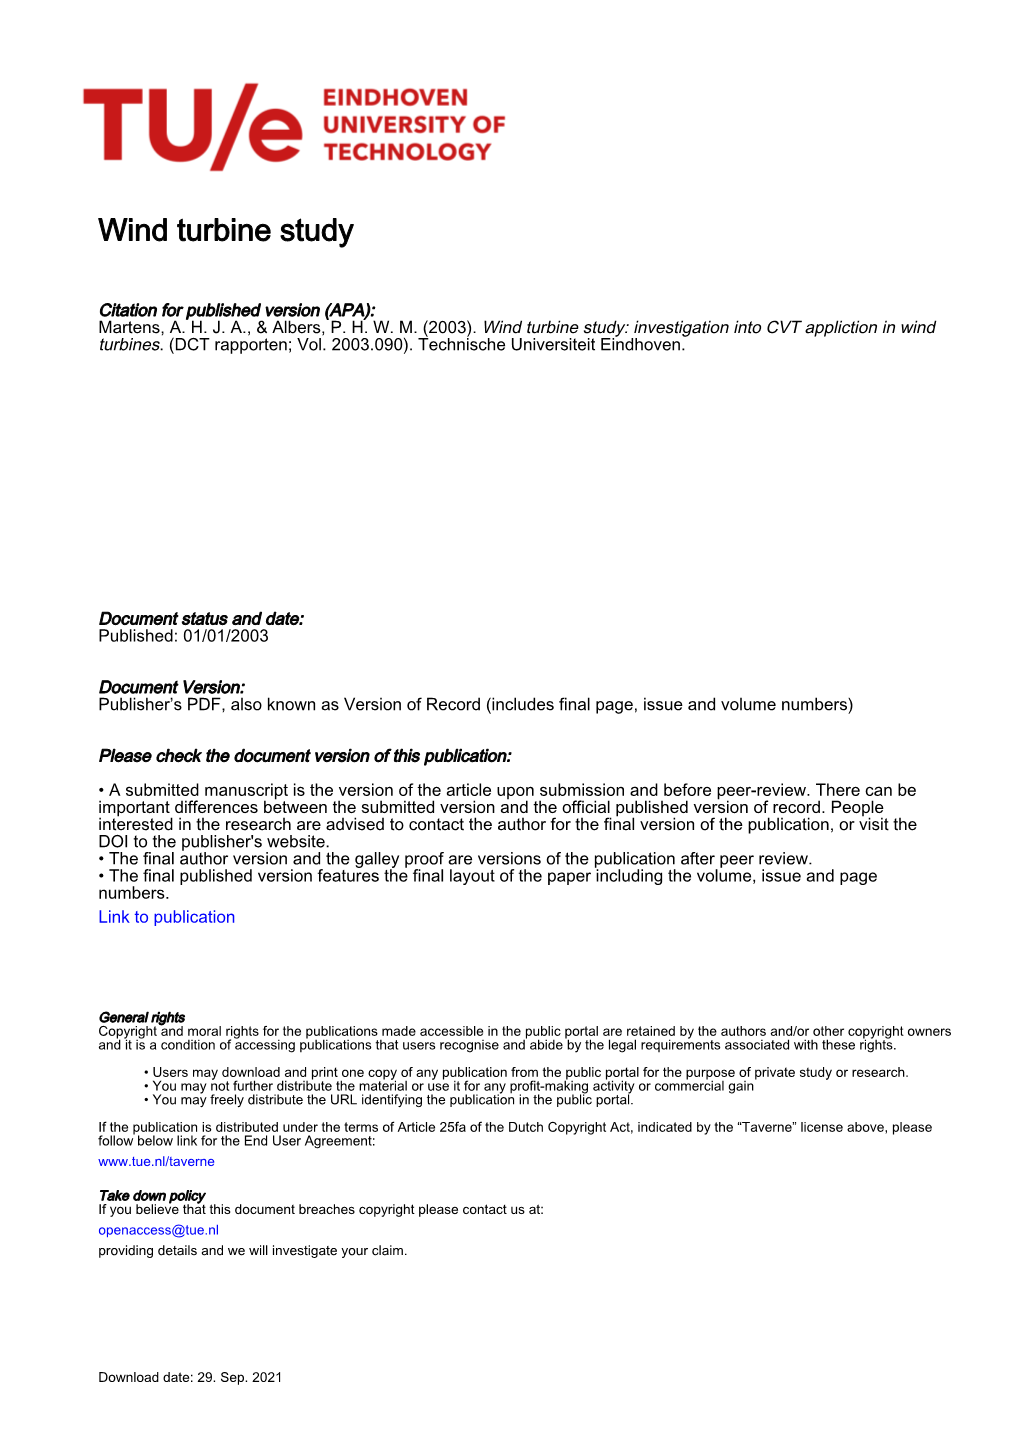 Wind Turbine Study